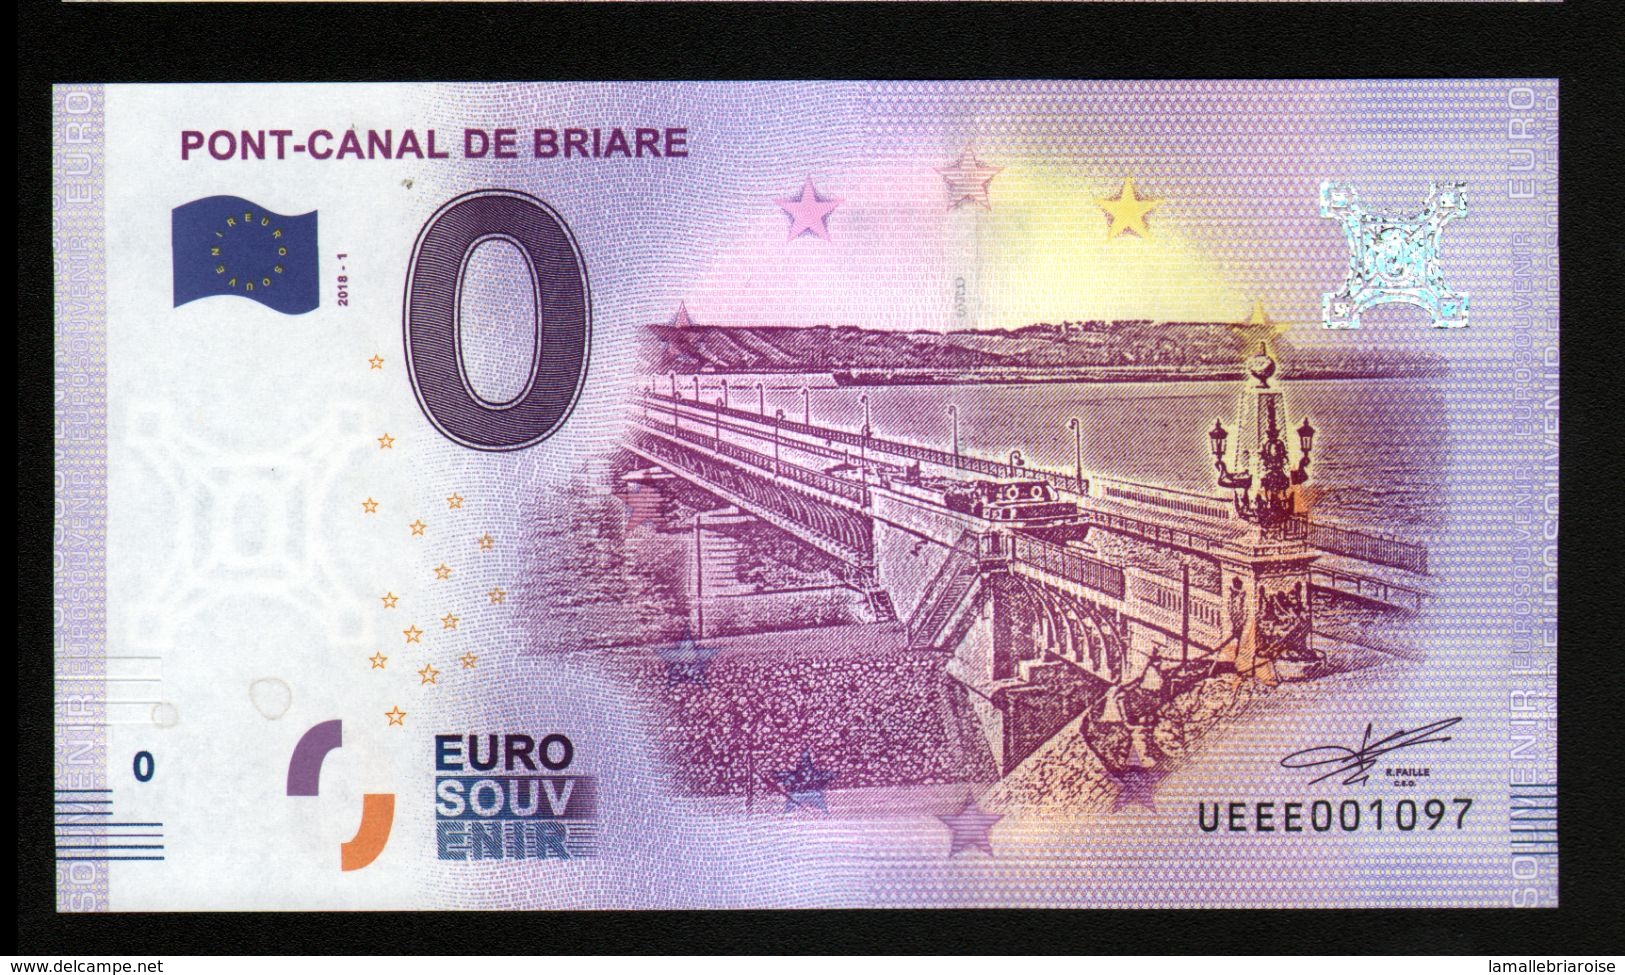 France - Billet Touristique 0 Euro 2018 N°1097 (UEEE001097/5000) - PONT-CANAL DE BRIARE - Essais Privés / Non-officiels